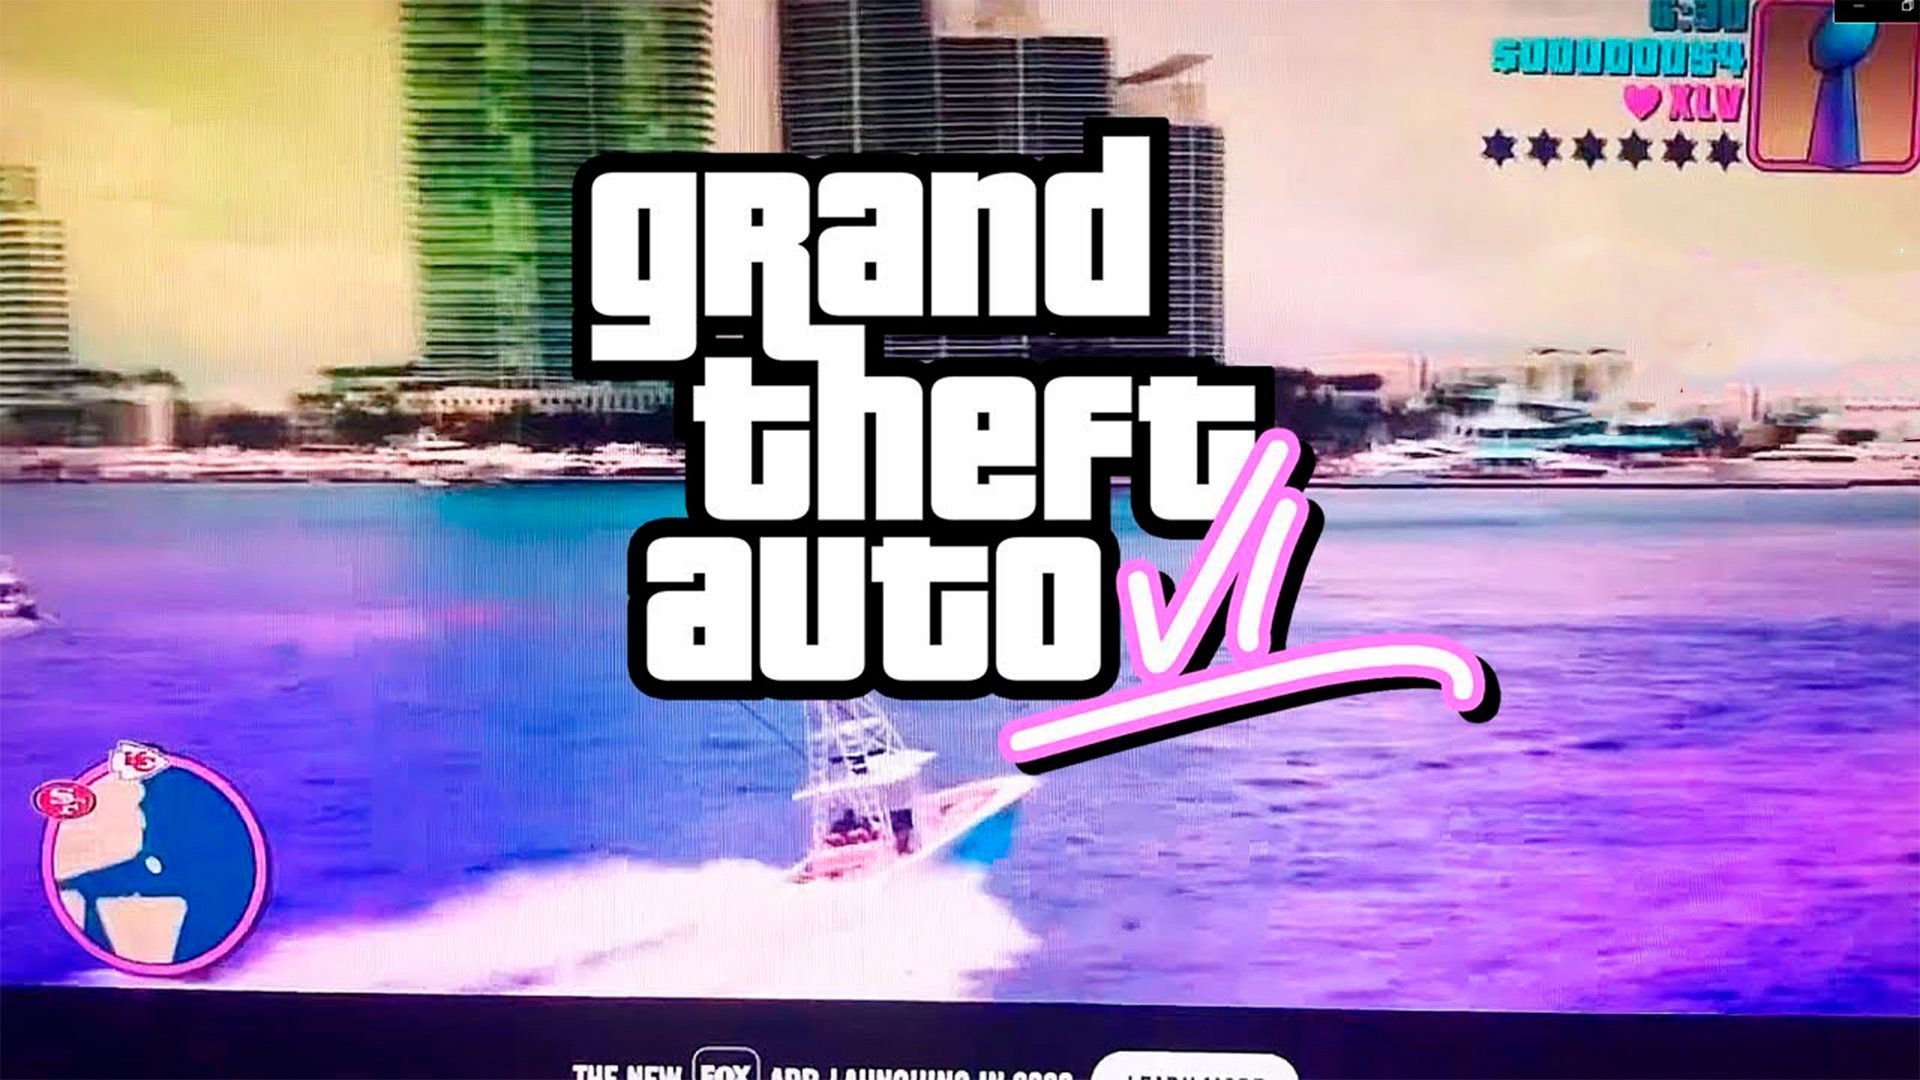 Grand Theft Auto VI ou GTA 6, pode ter recebido um teaser trailer durante o Super Bowl 2020, que decorreu ontem em Miami na Florida.